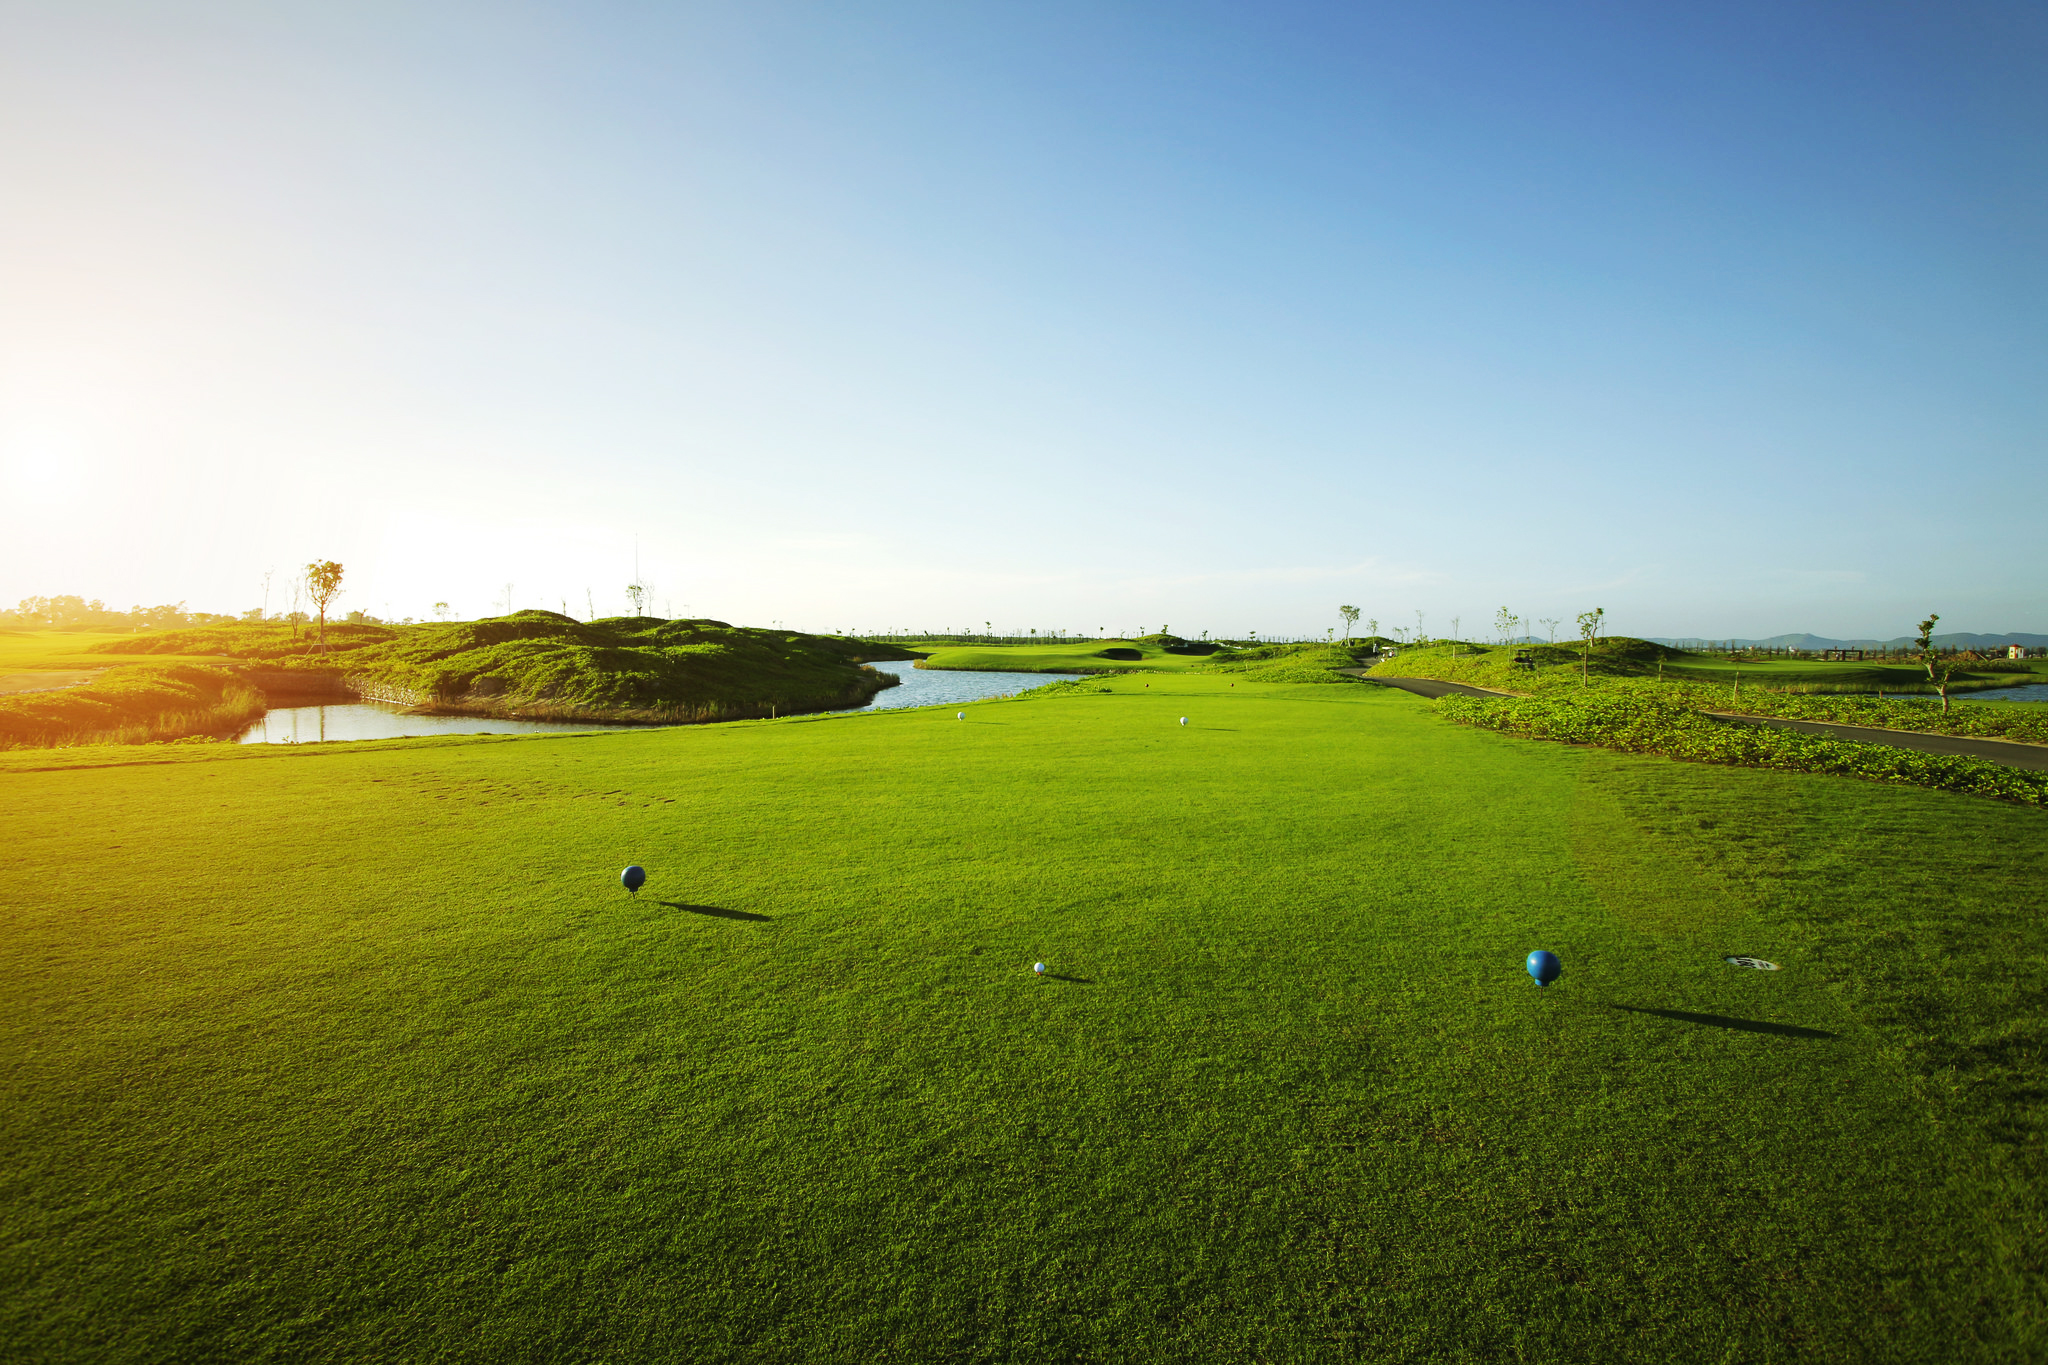 Sân FLC Sầm Sơn Golf Links - một trong hai sân golf của FLC do Nicklaus Design thiết kế, nơi vừa diễn ra giải golf nữ nghiệp dư Quốc gia 2016 và tới đây là giải Faros Golf Tournament (26-27/11)